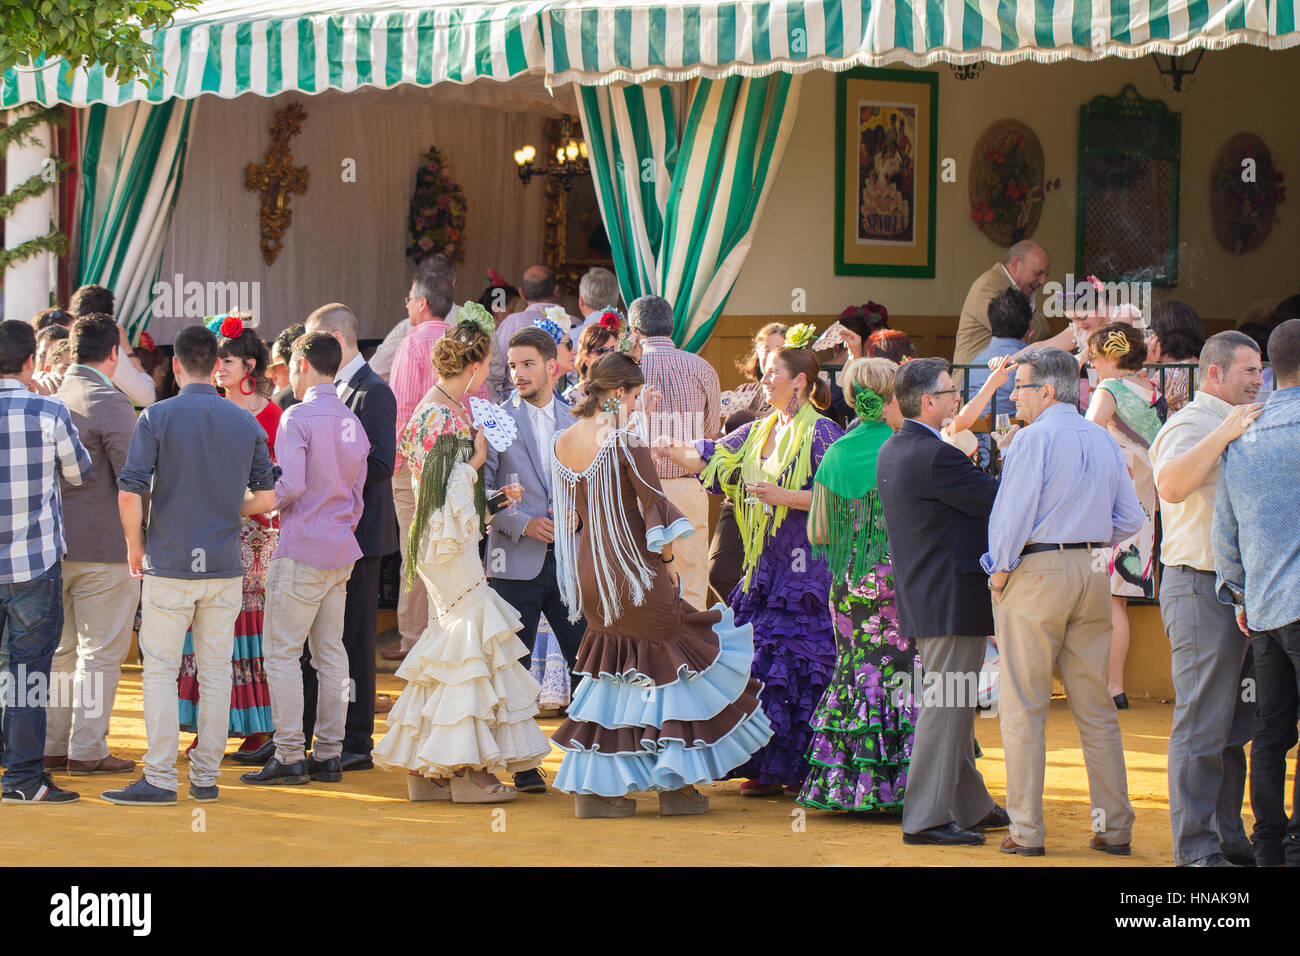 Sevilla, Spanien - 25 APR: Leute gekleidet in traditionellen spanischen Kostümen tanzen und Feiern der Sevillas April Fair am 25. April 2014 in s. Stockfoto